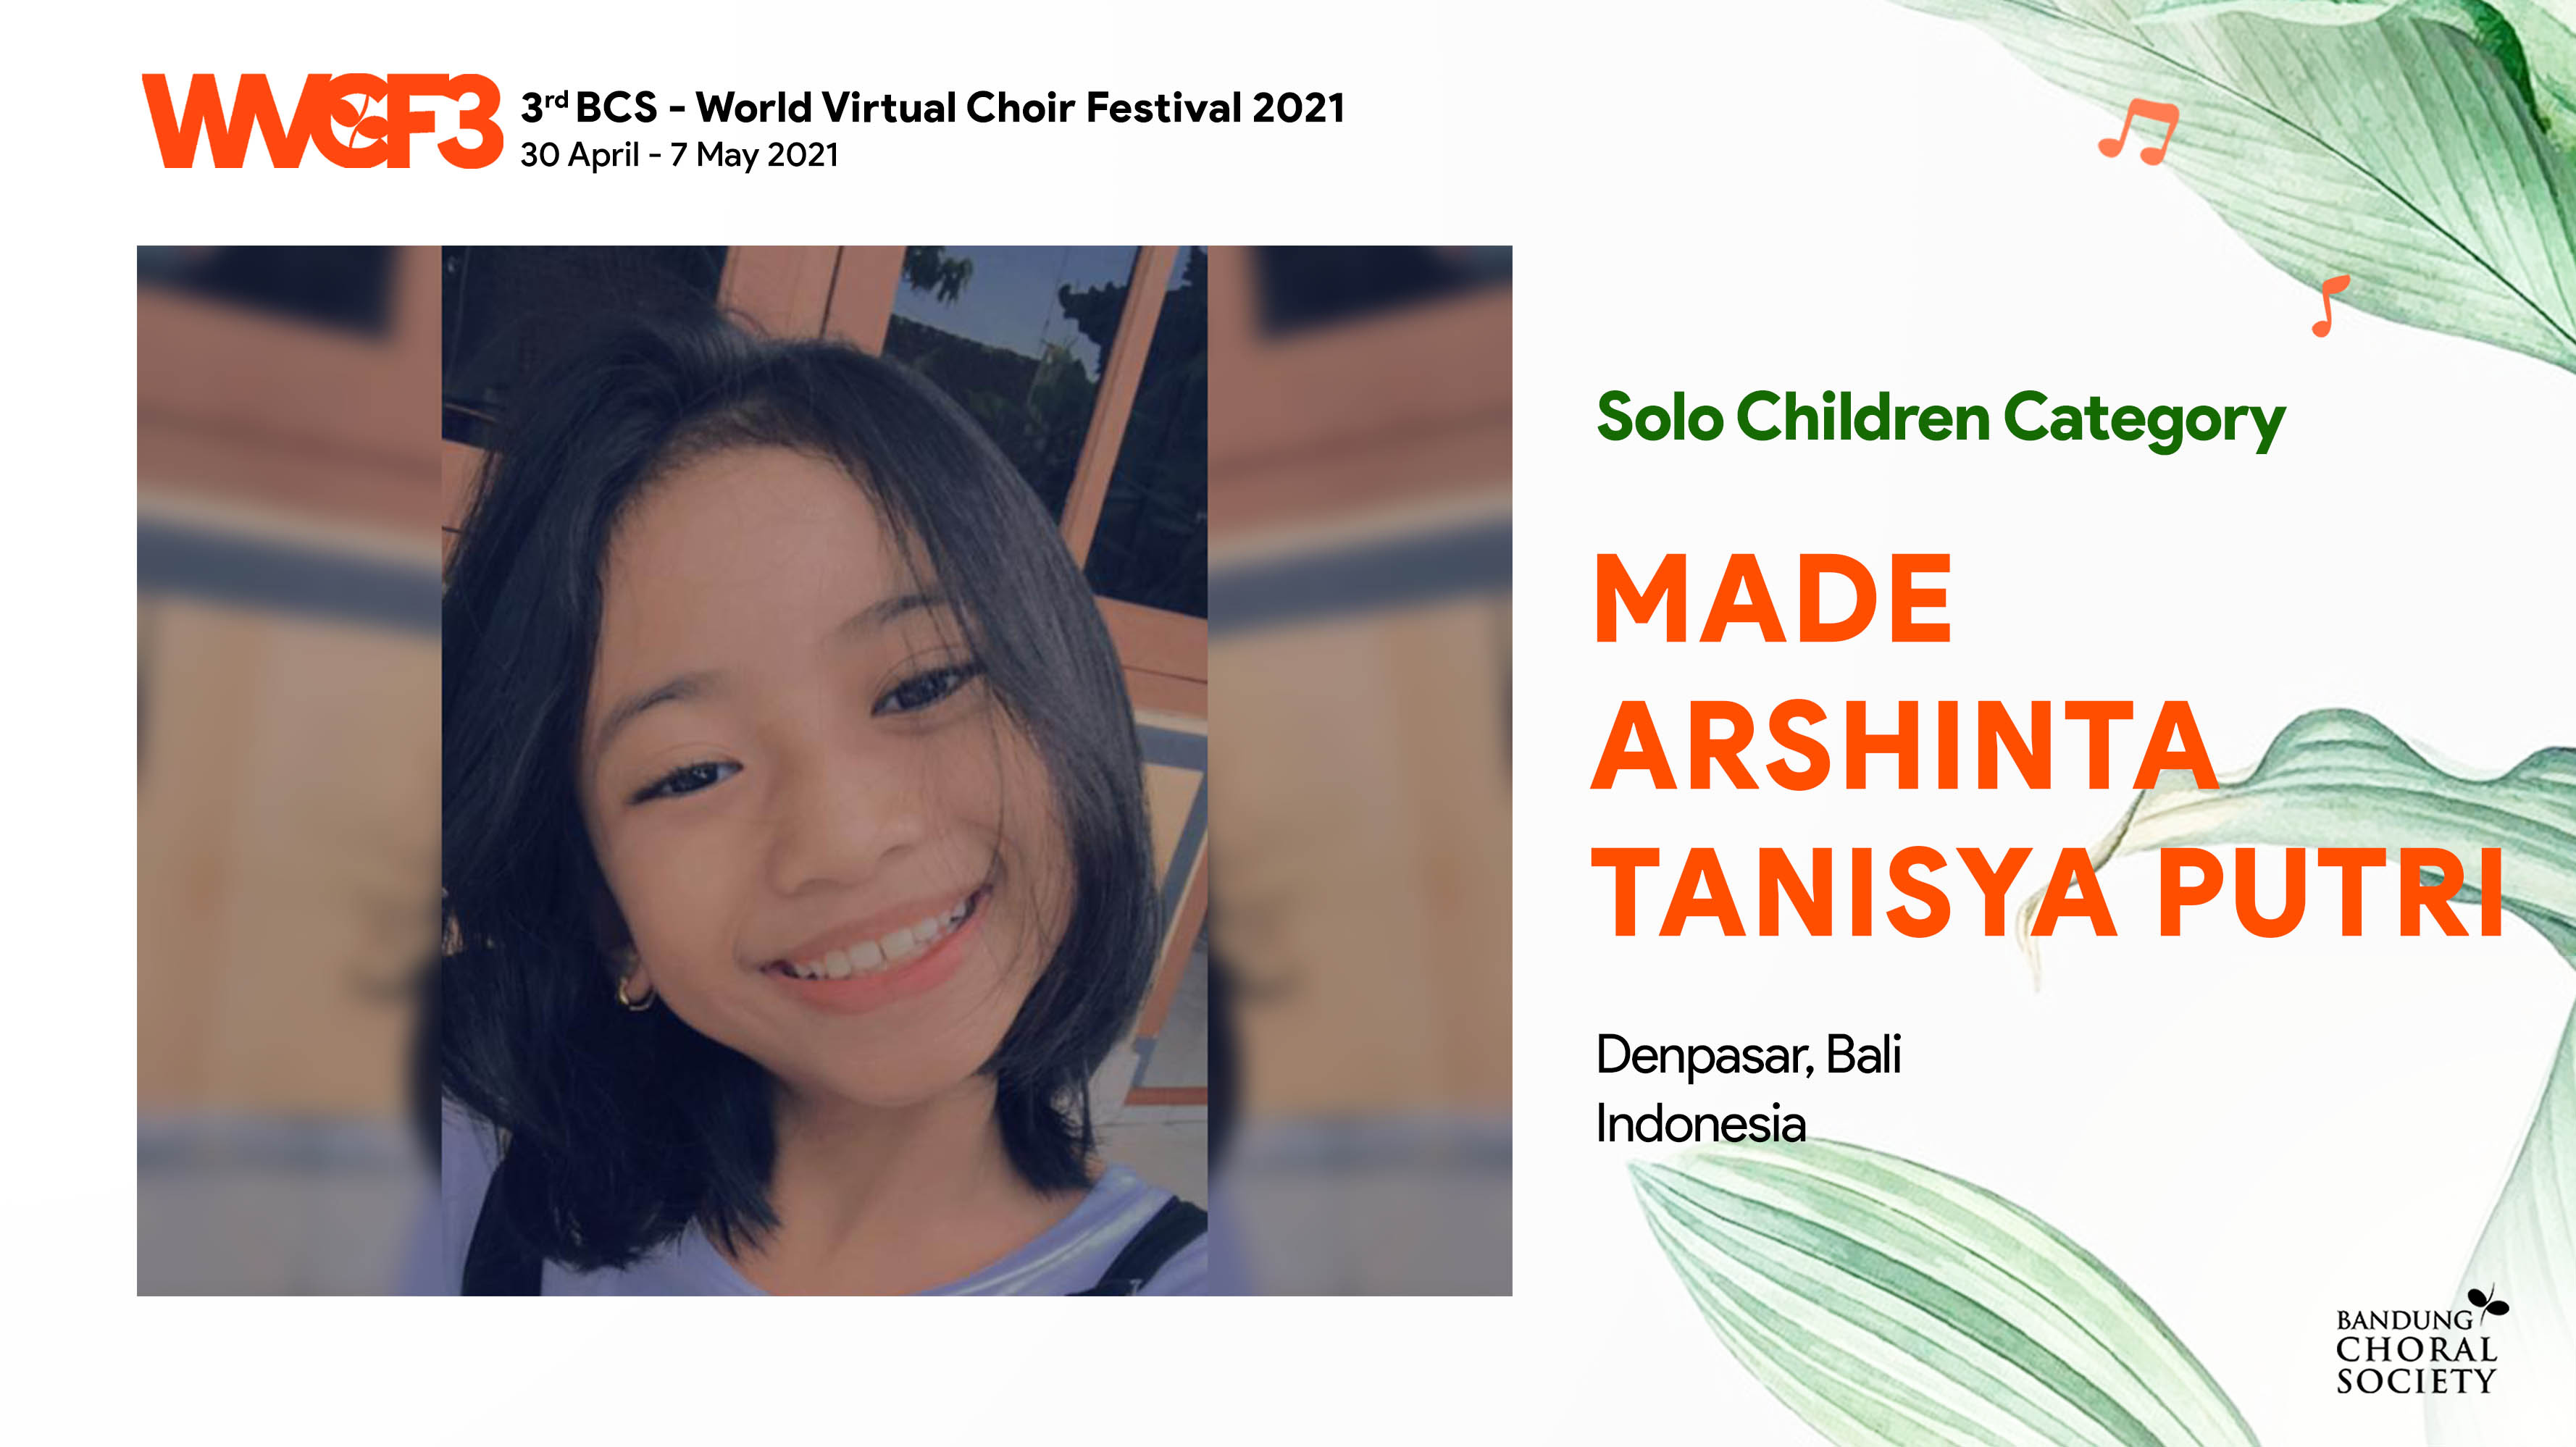 Bandung Choral Society | THE 3RD BCS - WORLD VIRTUAL CHOIR FESTIVAL 2021